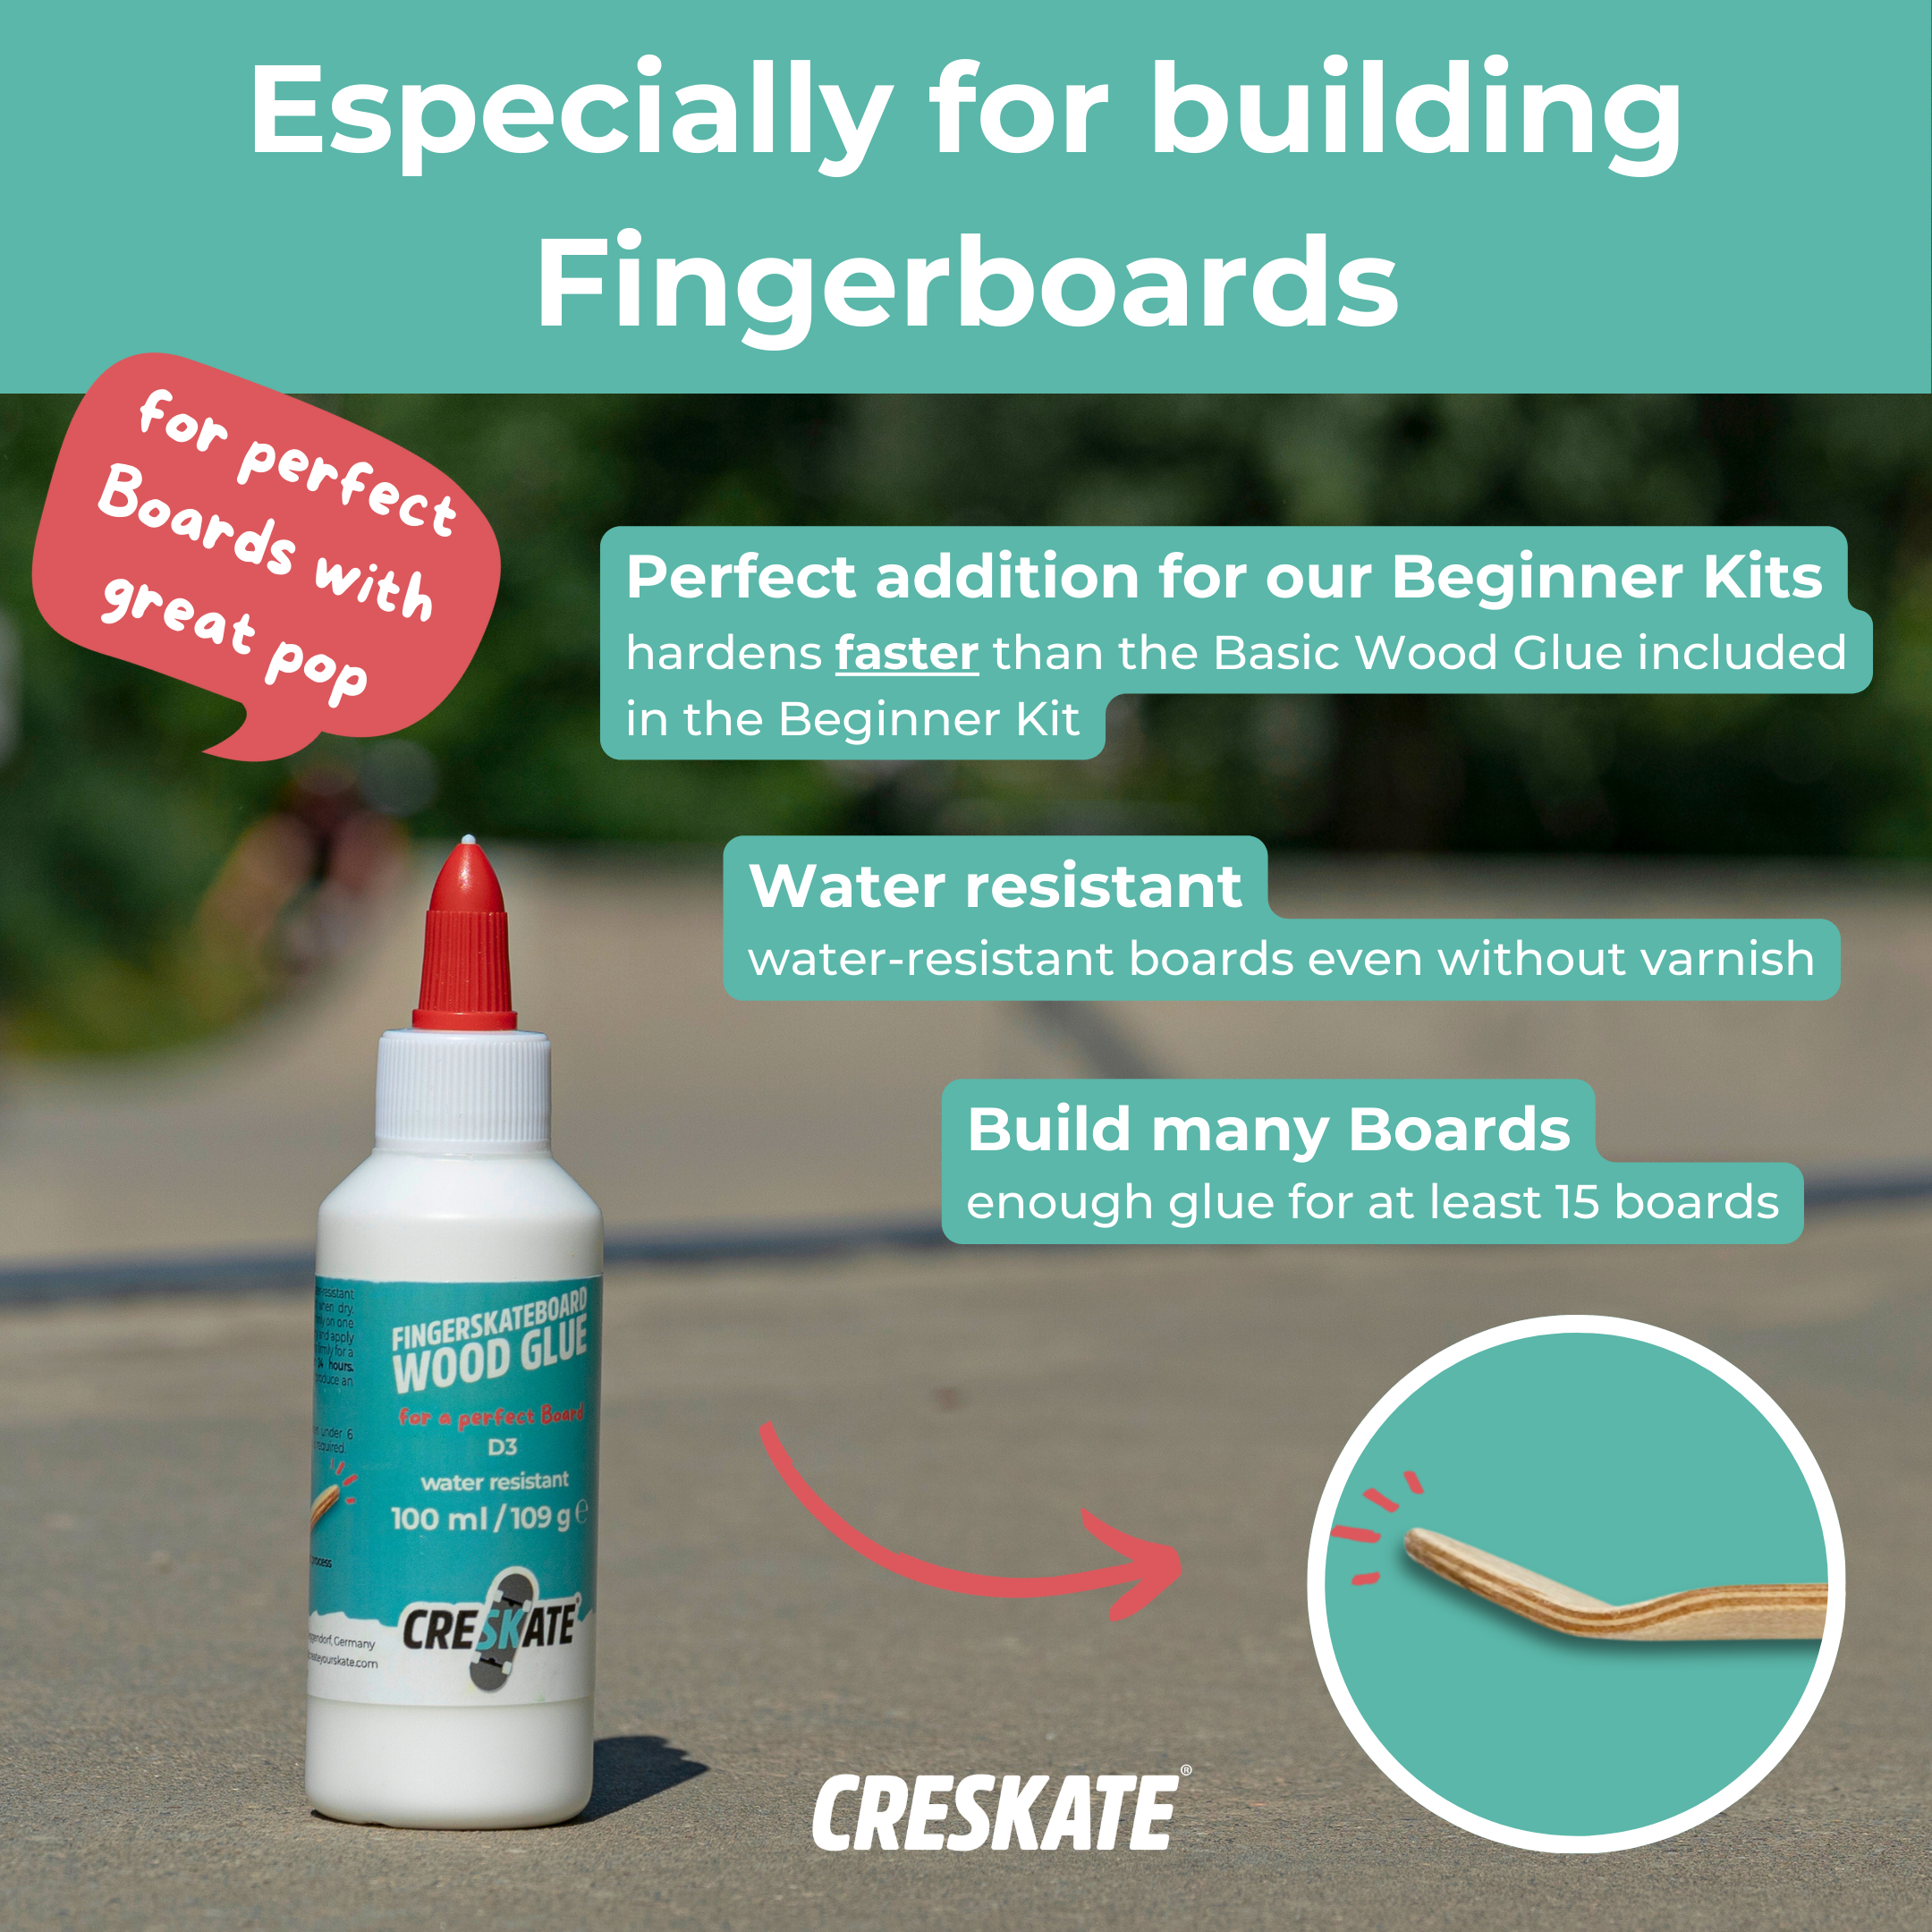 Fingerskateboard Wood Glue - for perfect Boards